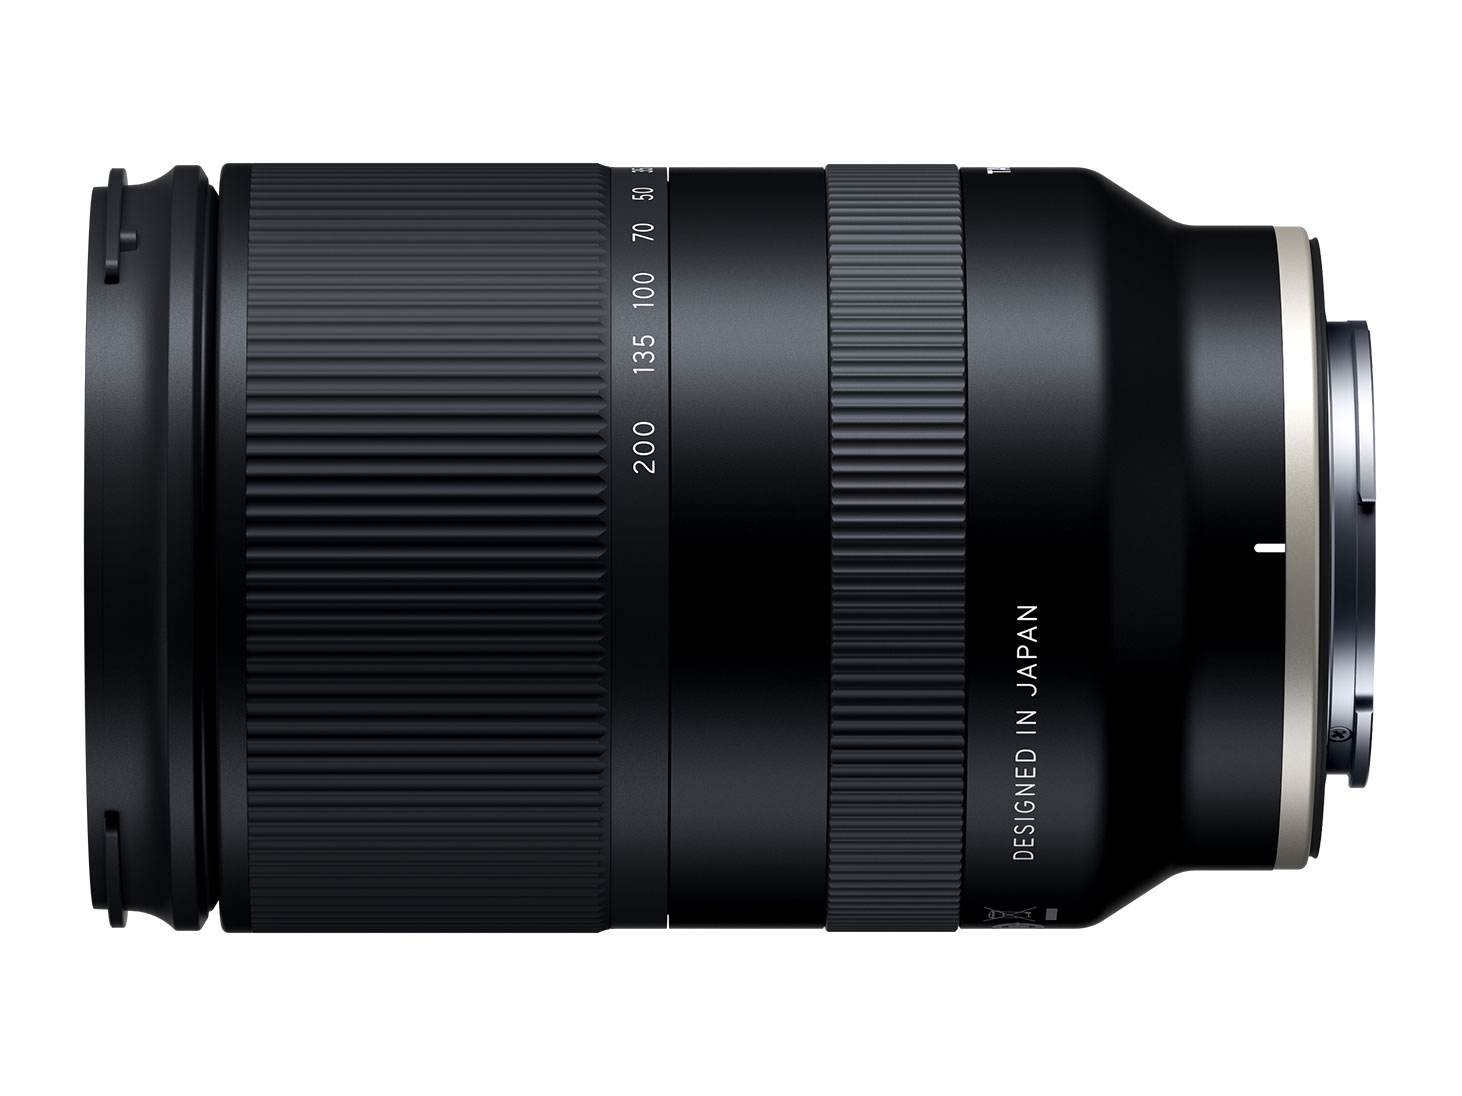 Ống kính Tamron 28-200mm F2.8-5.6 dành cho Sony ngàm E ra mắt, giá 729 USD